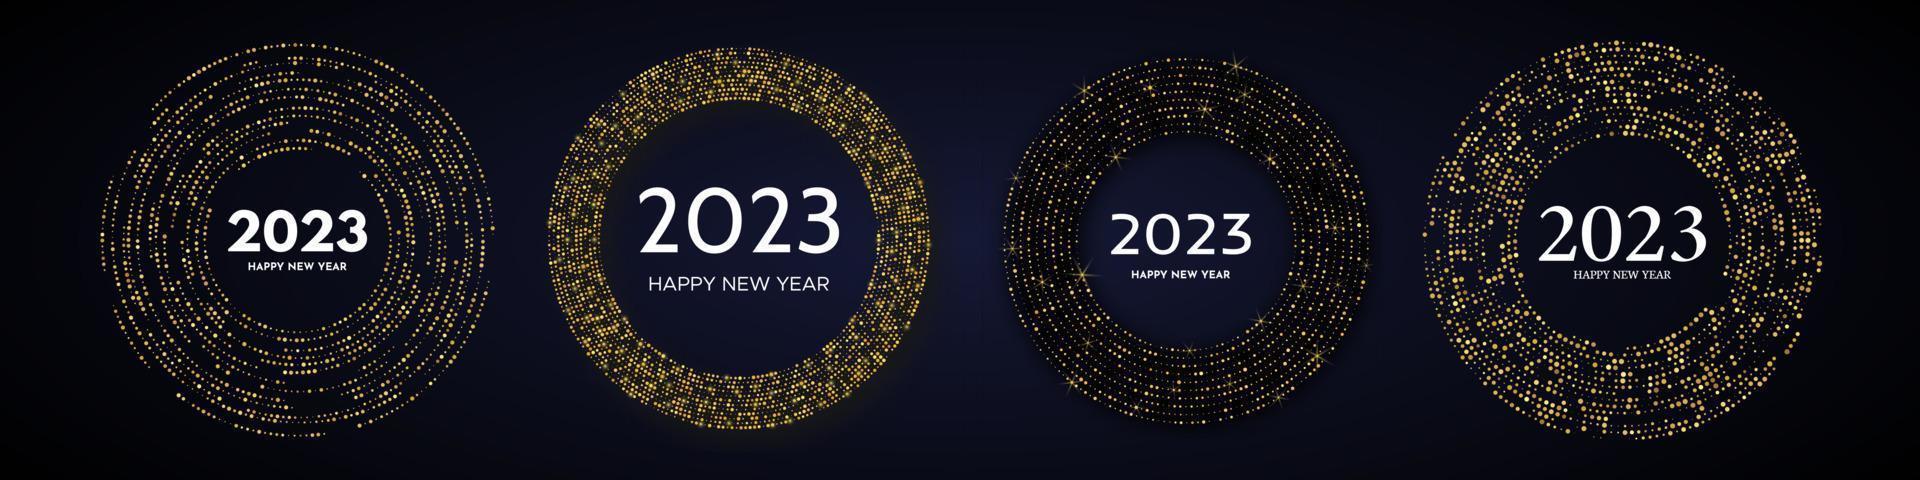 2023 Frohes neues Jahr mit goldenem Glitzermuster in Kreisform. satz von vier abstrakten goldglühenden halbton-punktierten hintergründen für weihnachtsfeiertagsgrußkarte auf dunklem hintergrund. Vektor-Illustration vektor